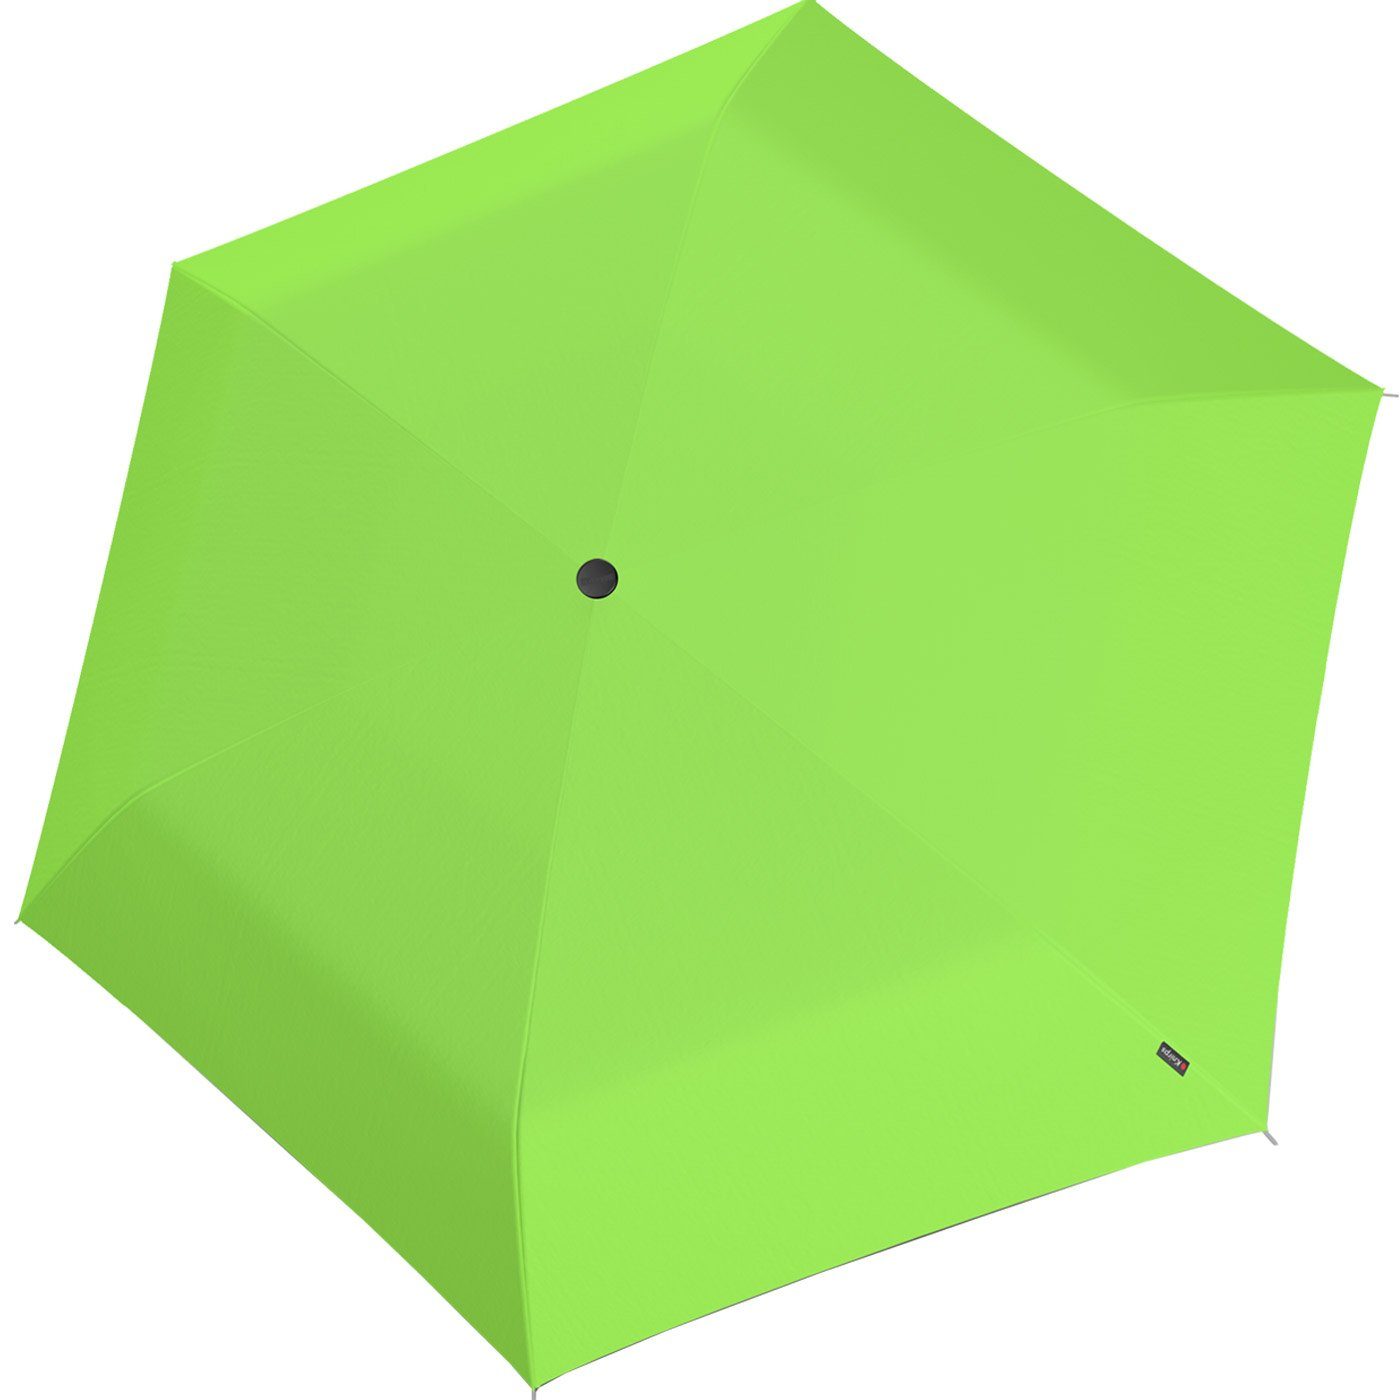 Light Manual und Neon, Taschenregenschirm grün Ultra super US.050 Knirps® kompakt - Slim leicht extrem